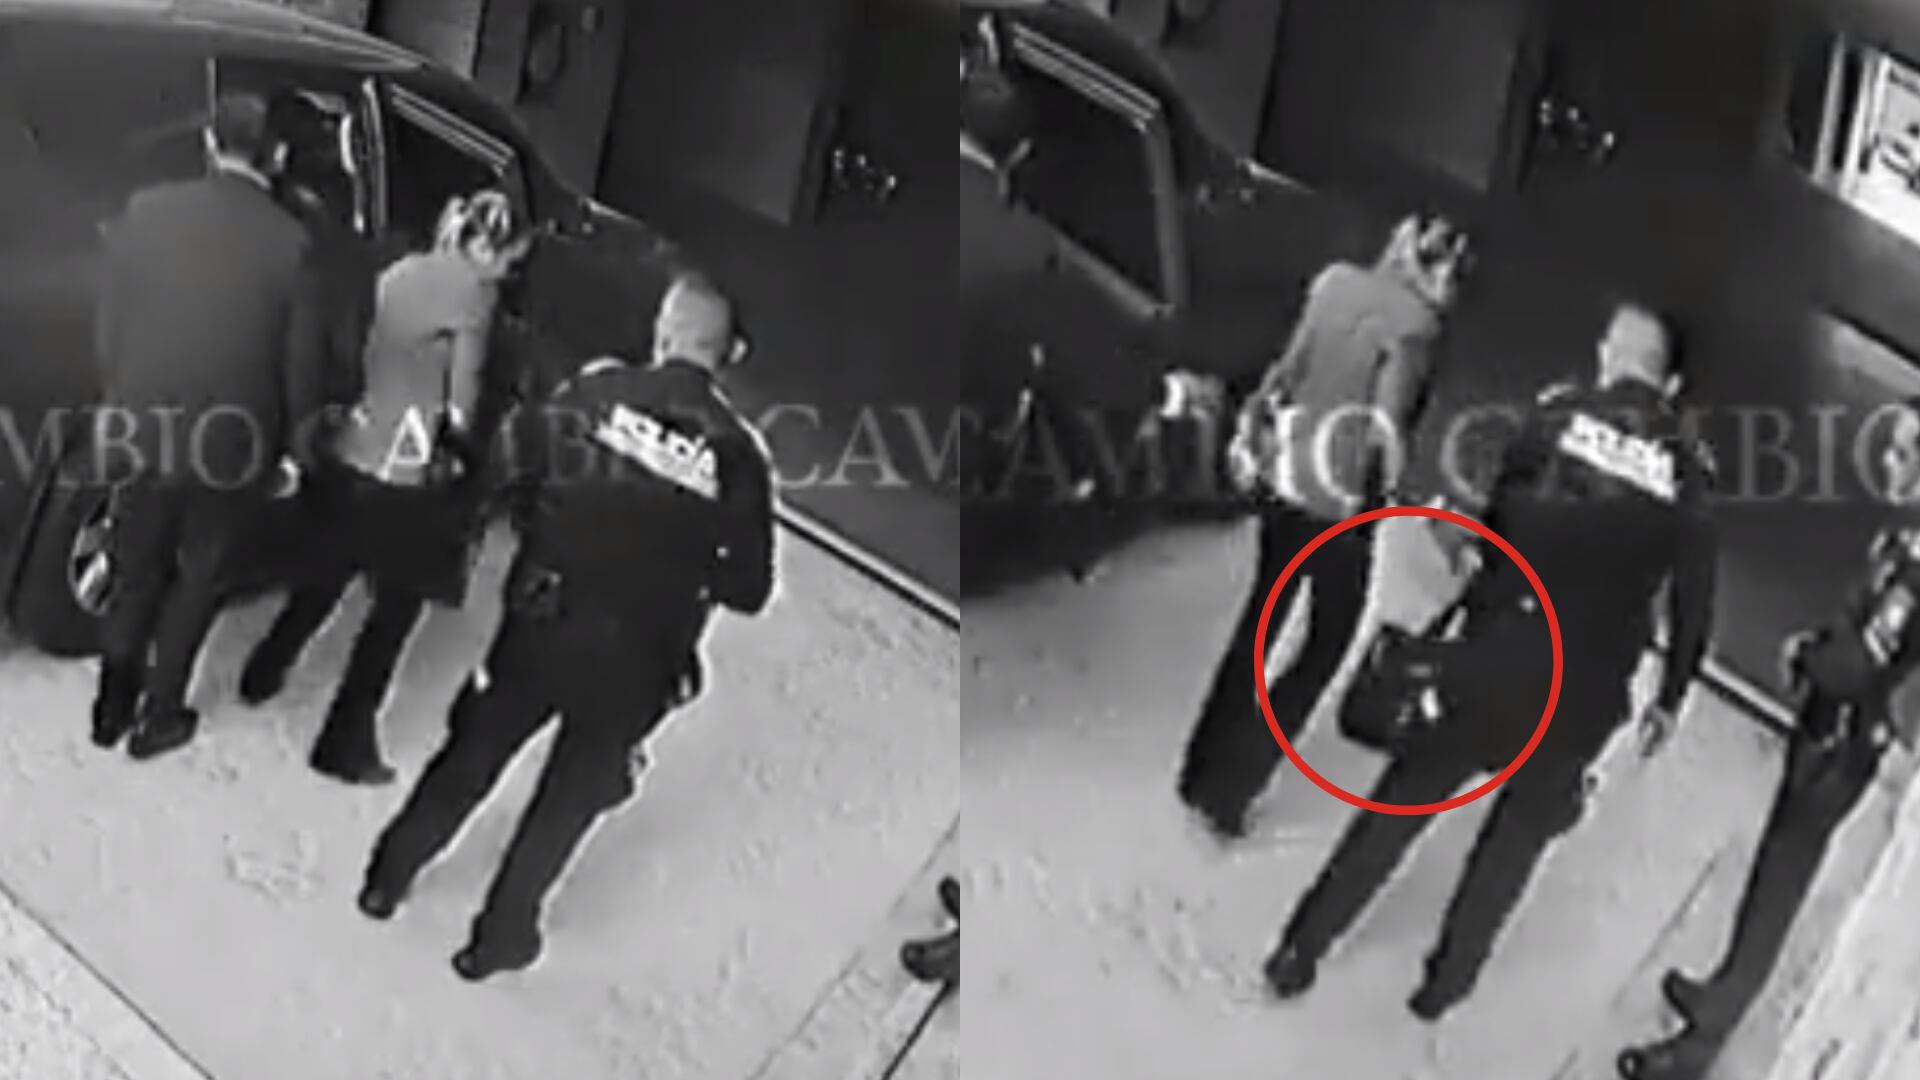 Video reveló que plata presuntamente robada a Sarabia iba en una maleta y no cinco